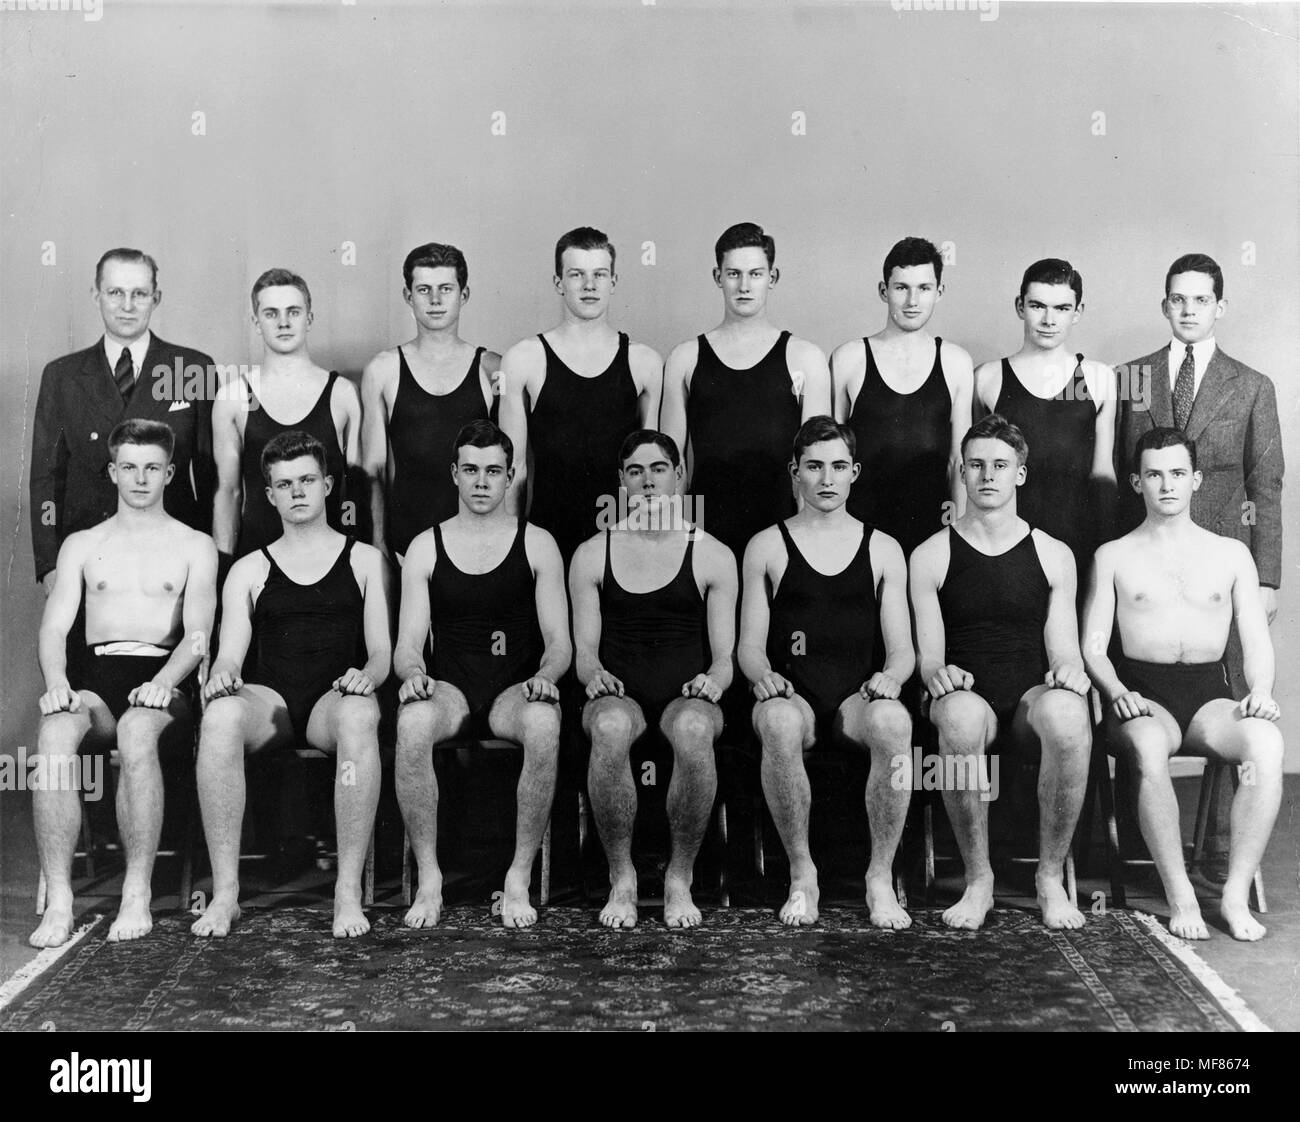 PC 16 c 1936/37 Harvard Swim Team Foto, C. 1936/37. John F. Kennedy ist in der hinteren Reihe, dritter von links. Foto in der John-F.-Kennedy Presidential Library und Museum, Boston. Stockfoto